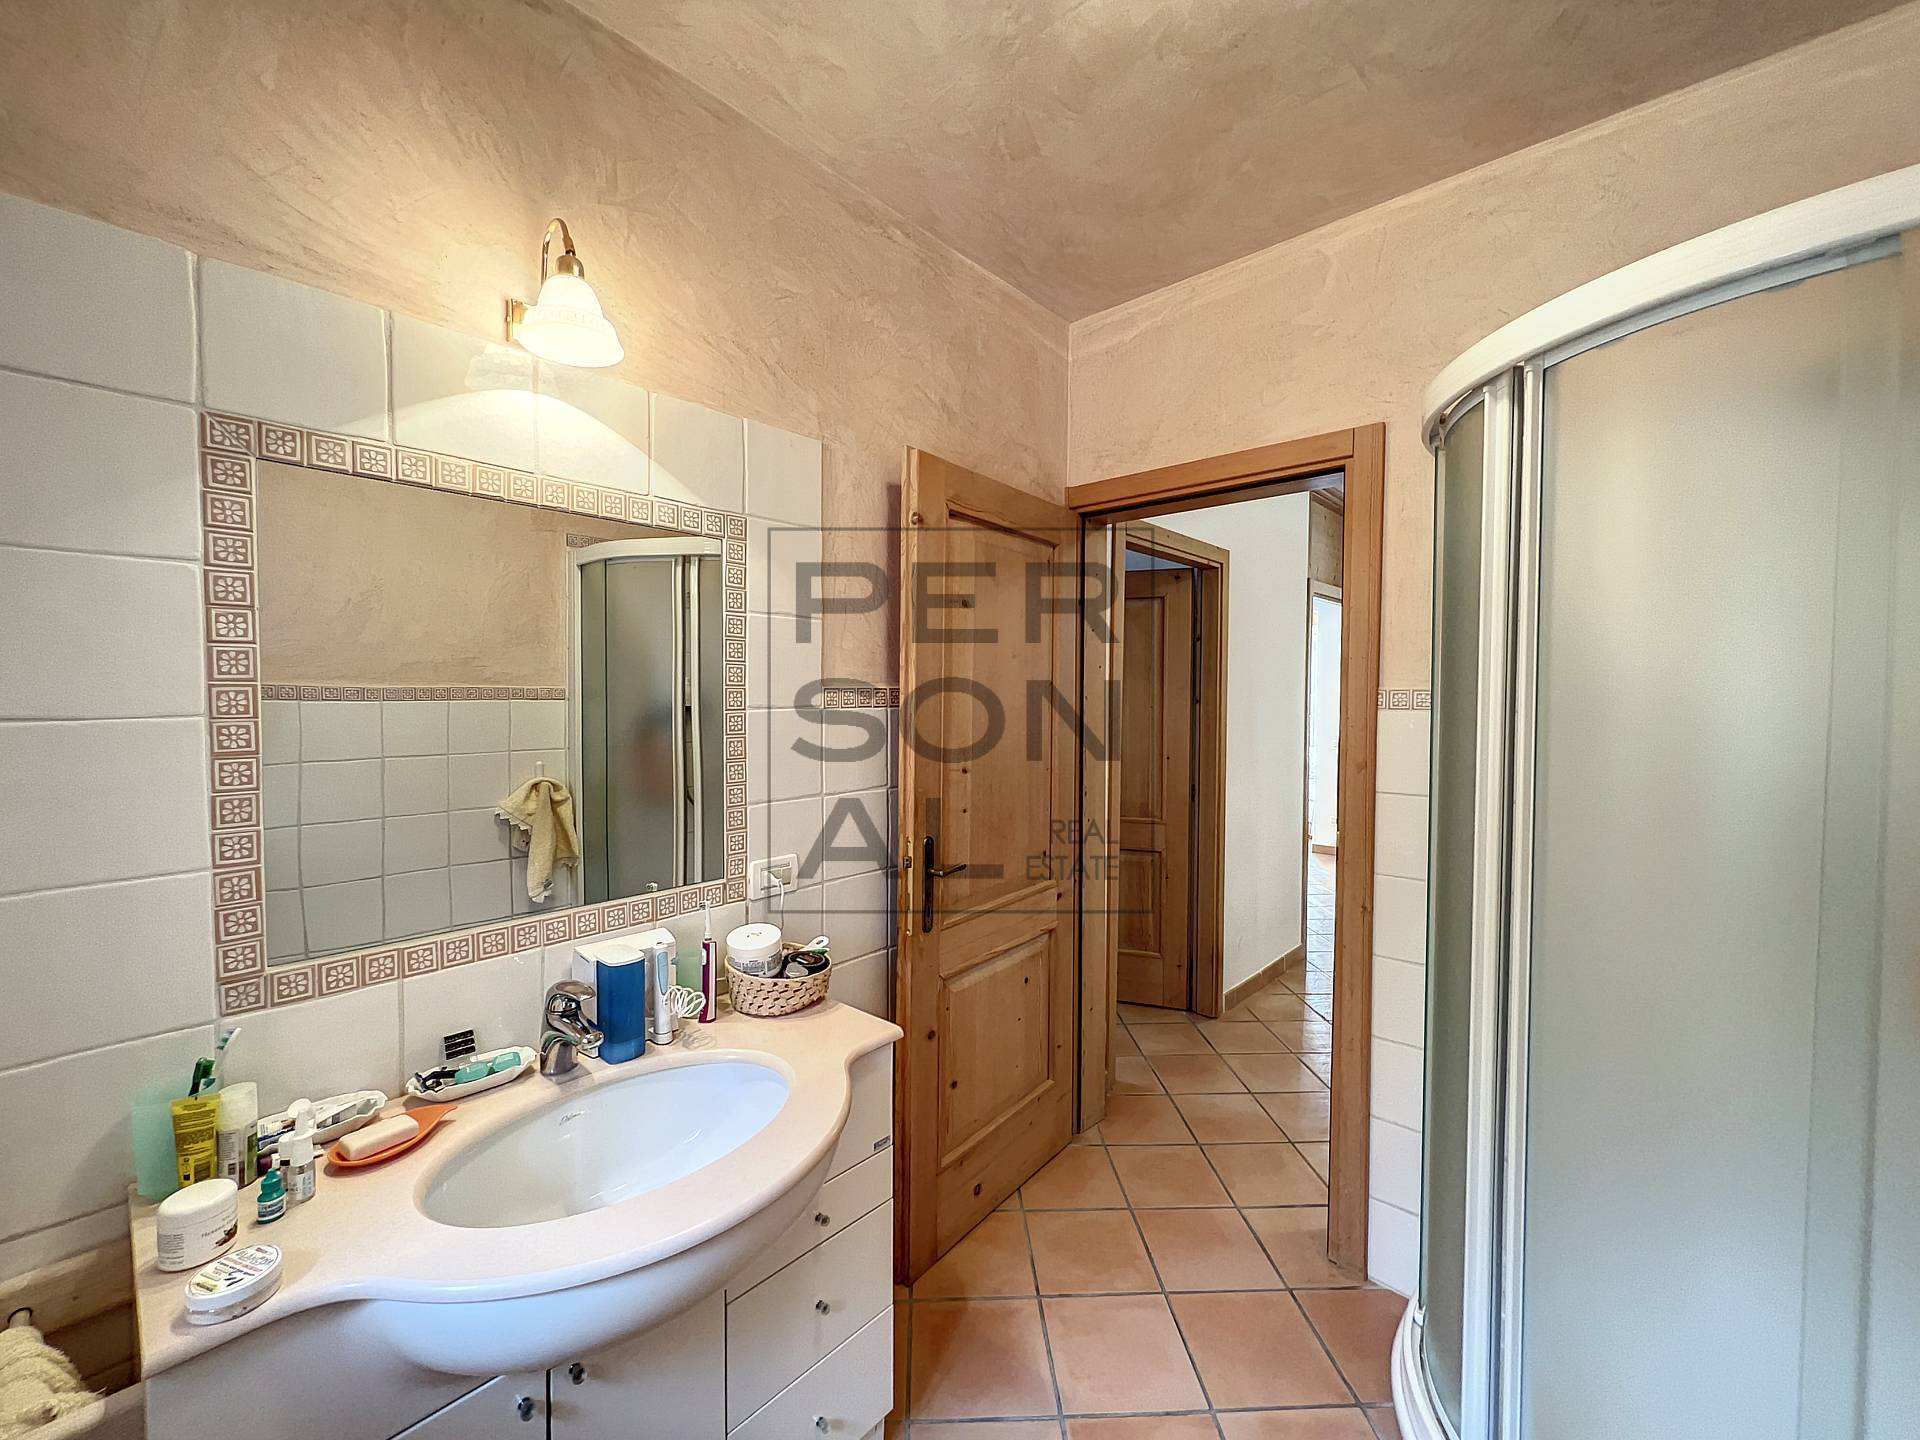 Foto villa indipendente in vendita a Besenello (Trento)